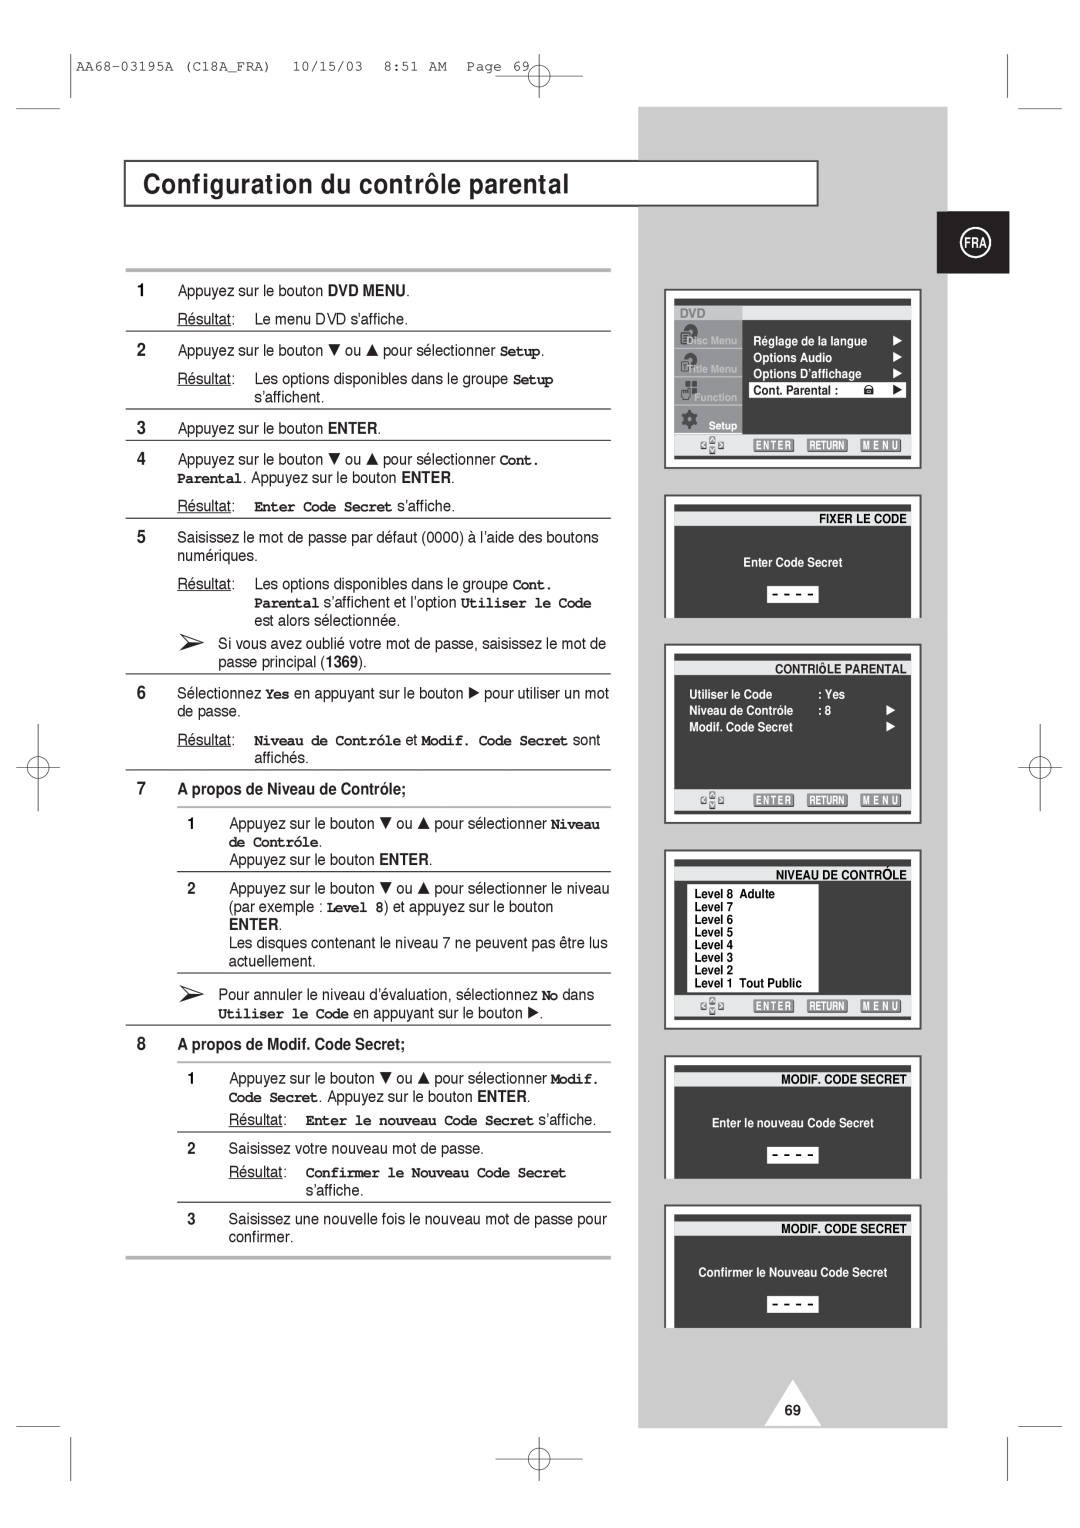 Samsung UW17J11VD5XXEF, UW17J11VD5XXEC manual Configuration du contrôle parental, Résultat Enter Code Secret s’affiche 